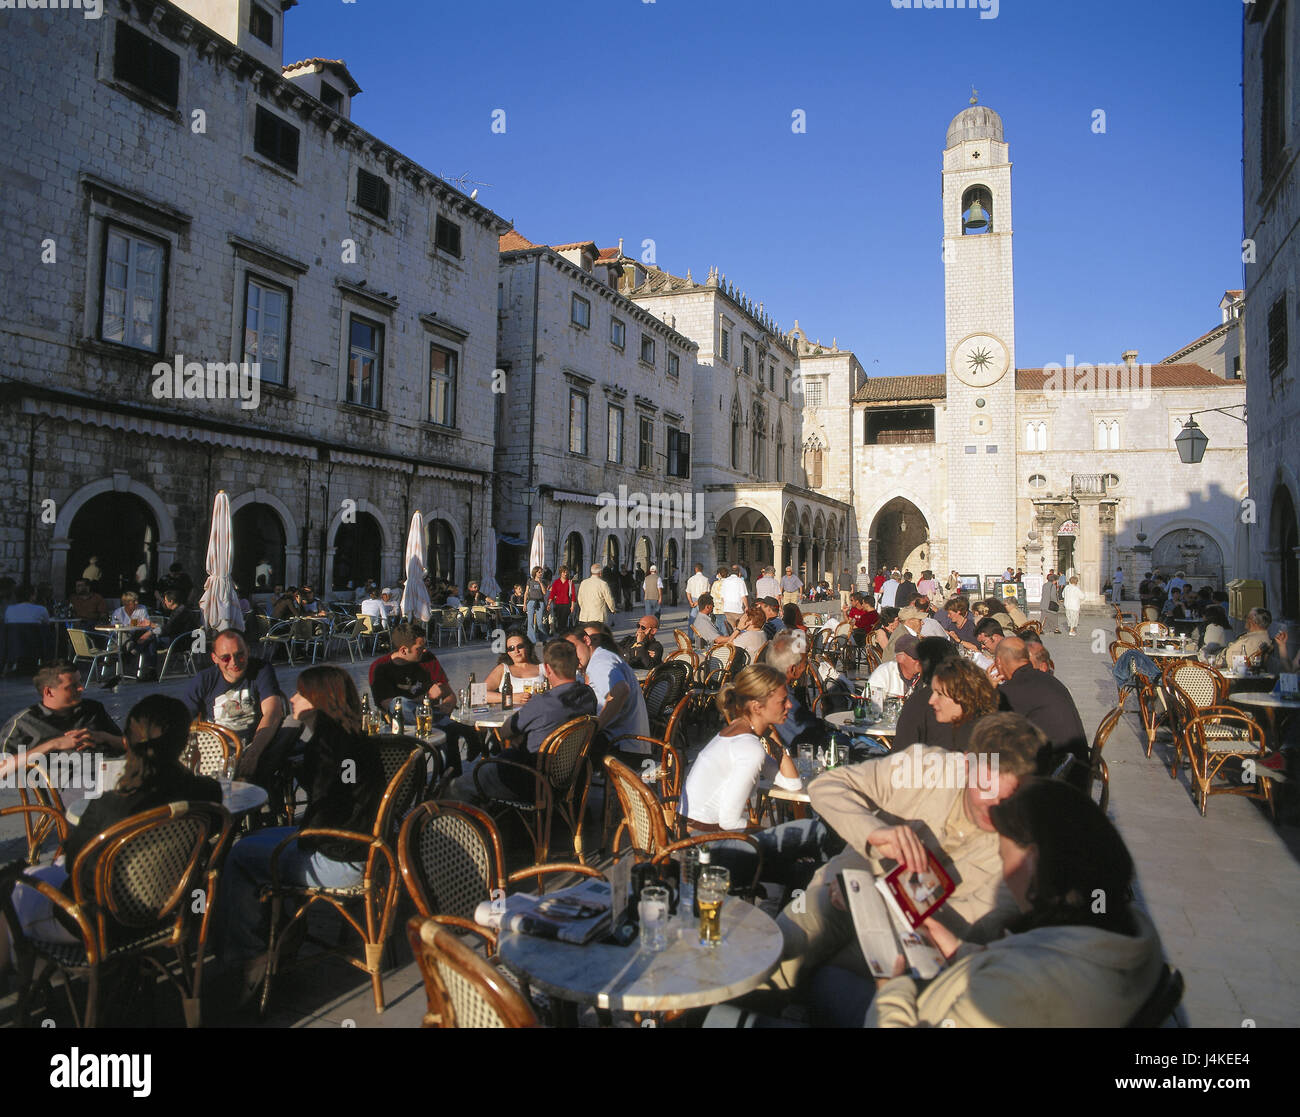 Croatie, Dubrovnik, centre-ville, Luza, street cafe, tourisme, Europe, péninsule, ville, station balnéaire, ville côtière, les maisons, les bâtiments, cafe, possibilités de siège, tables, chaises, réduite, du tourisme, du tourisme, de l'asseoir, animation, soirées Banque D'Images